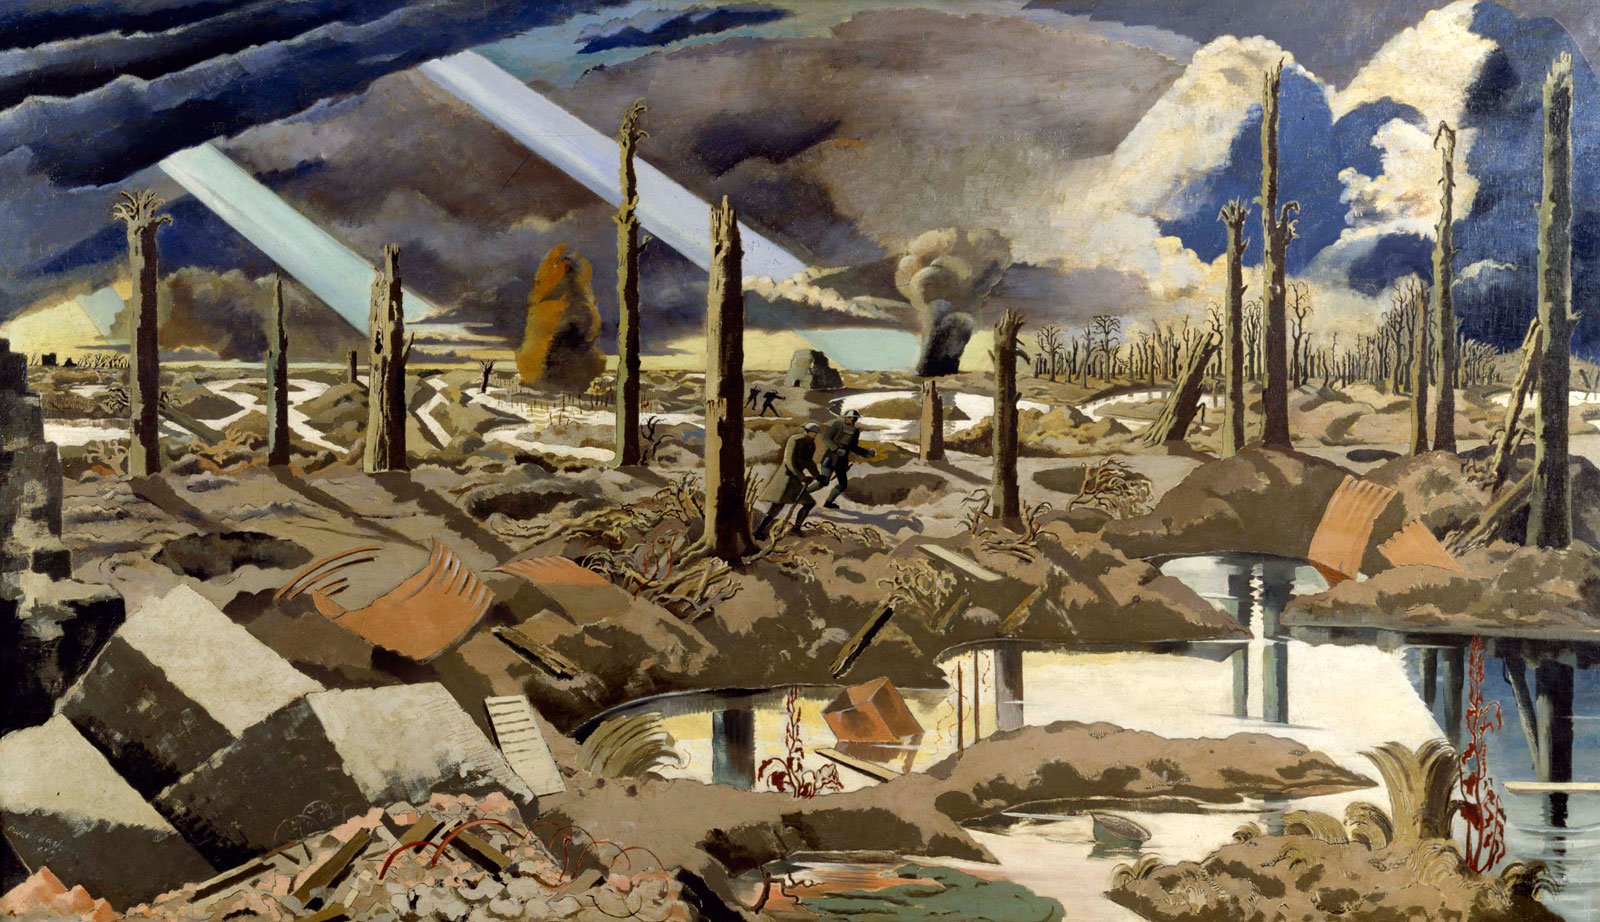 Paul Nash: The Menin Road, 1919